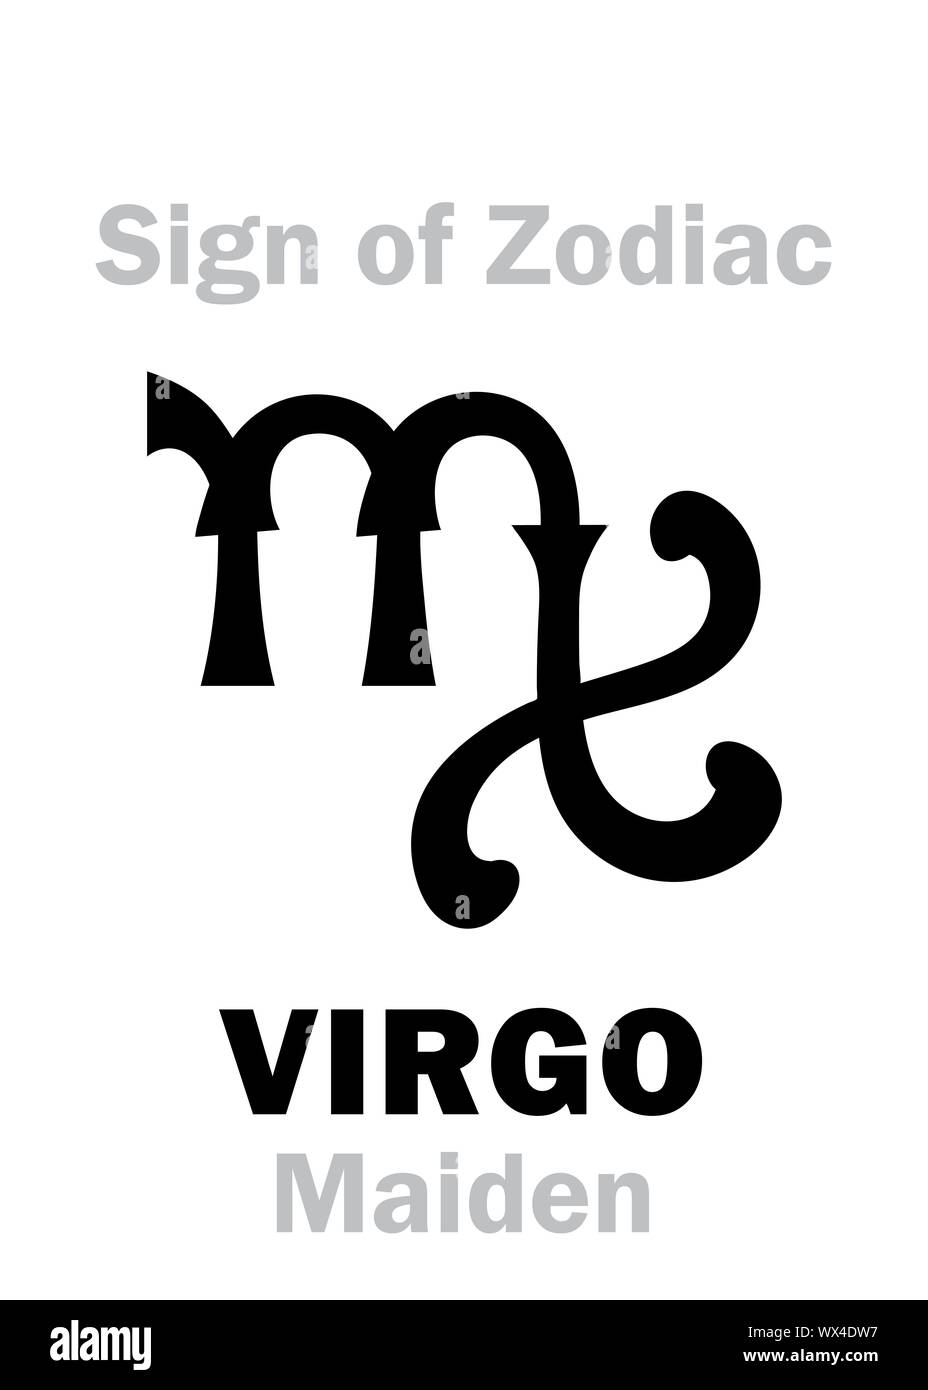 Astrologia: segno zodiacale della Vergine (Maiden) Foto Stock